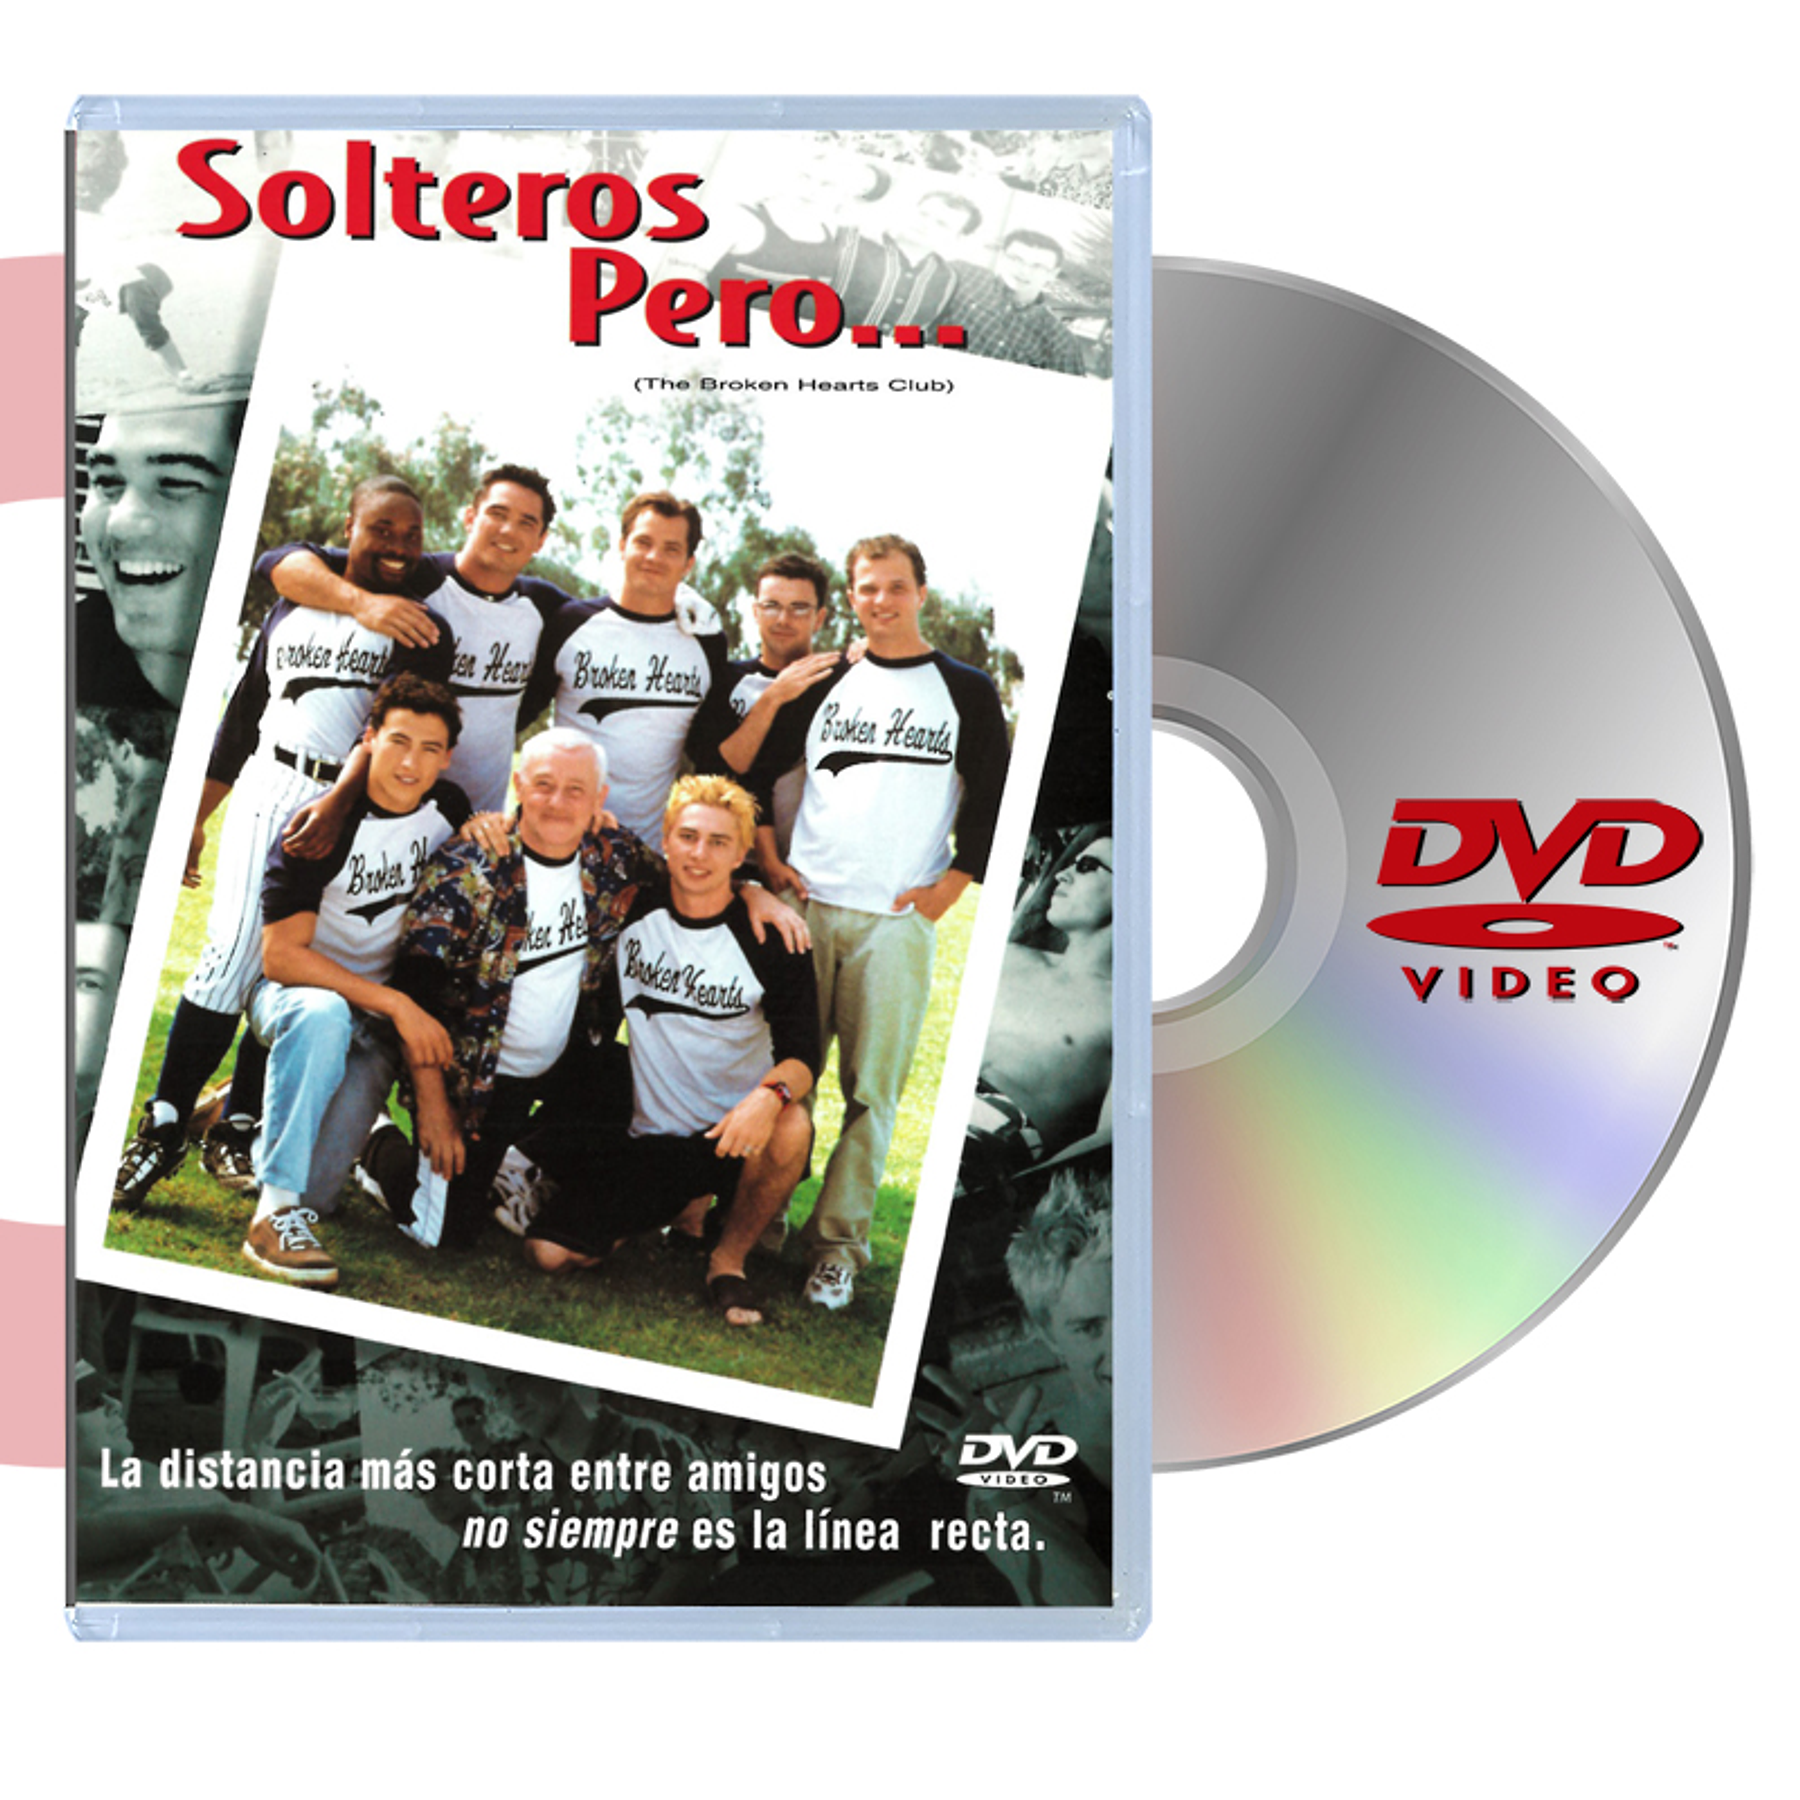 DVD SOLTEROS PERO…